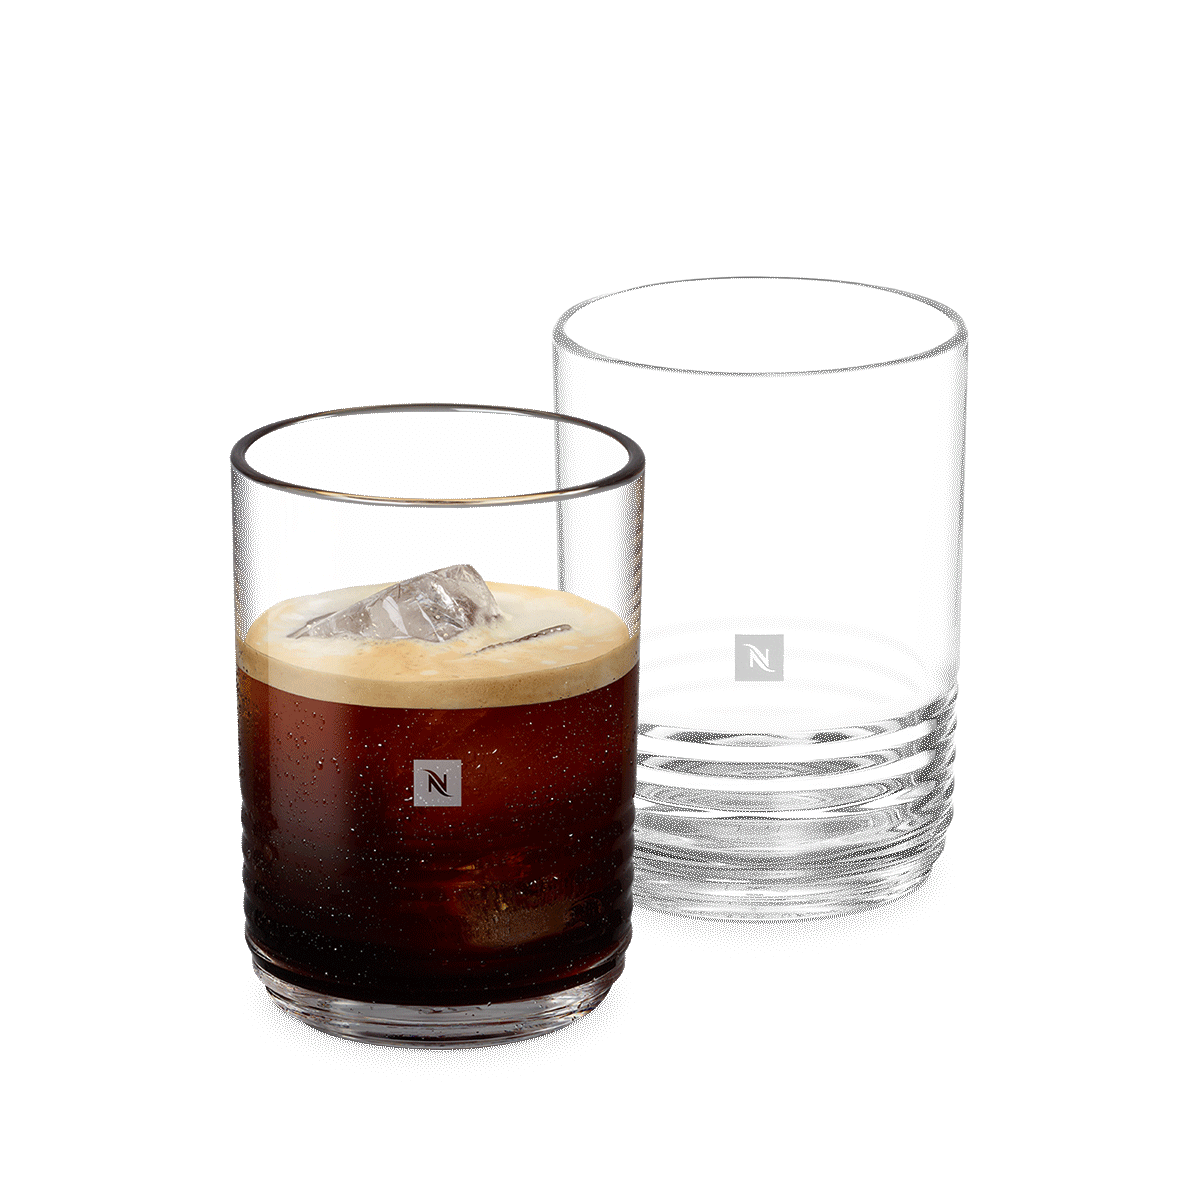 Access Denied  Recipe glass, Coffee accessories, Nespresso